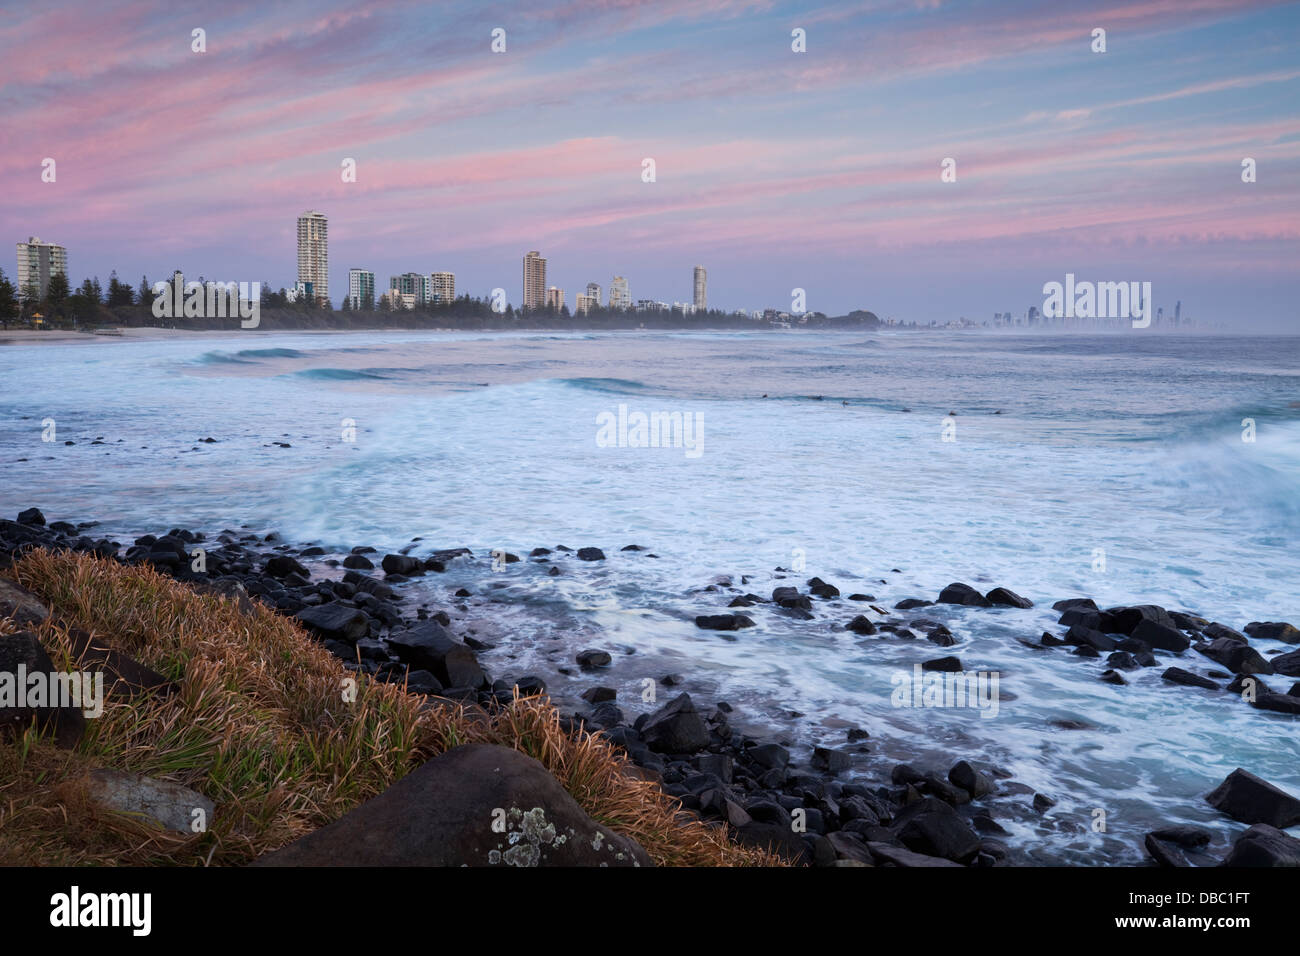 Afficher le long de la côte, au crépuscule, vu de Burleigh Heads. Burleigh Heads, Gold Coast, Queensland, Australie Banque D'Images